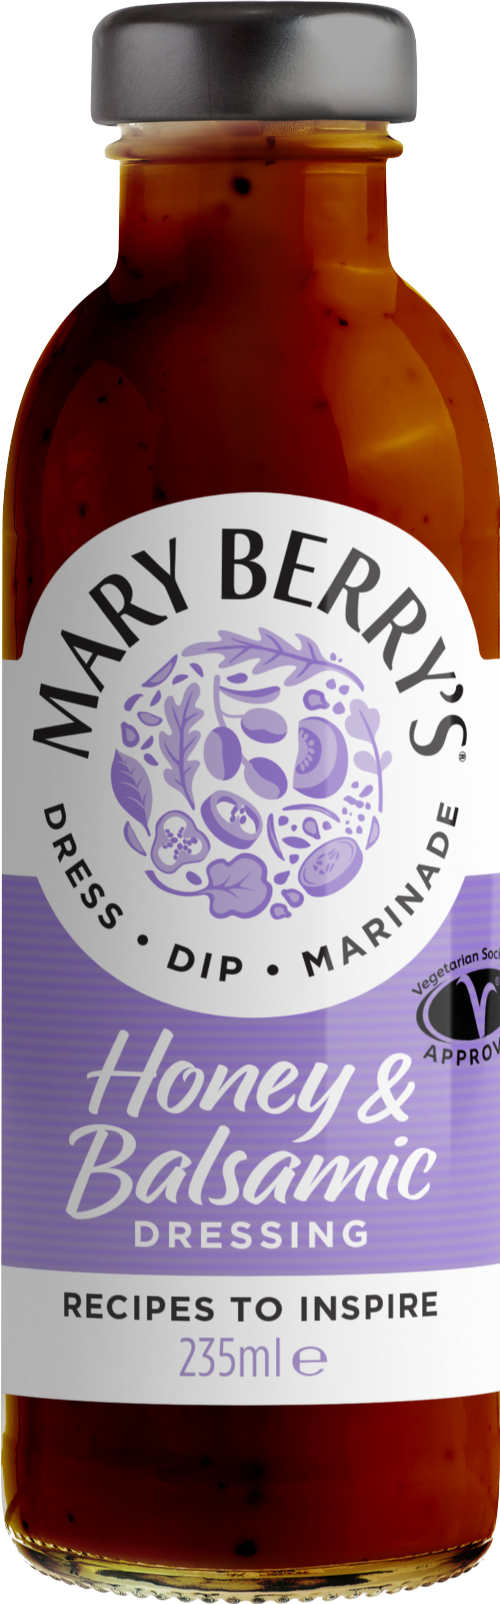 MARY BERRY Honey & Balsamic Vinaigrette 235ml